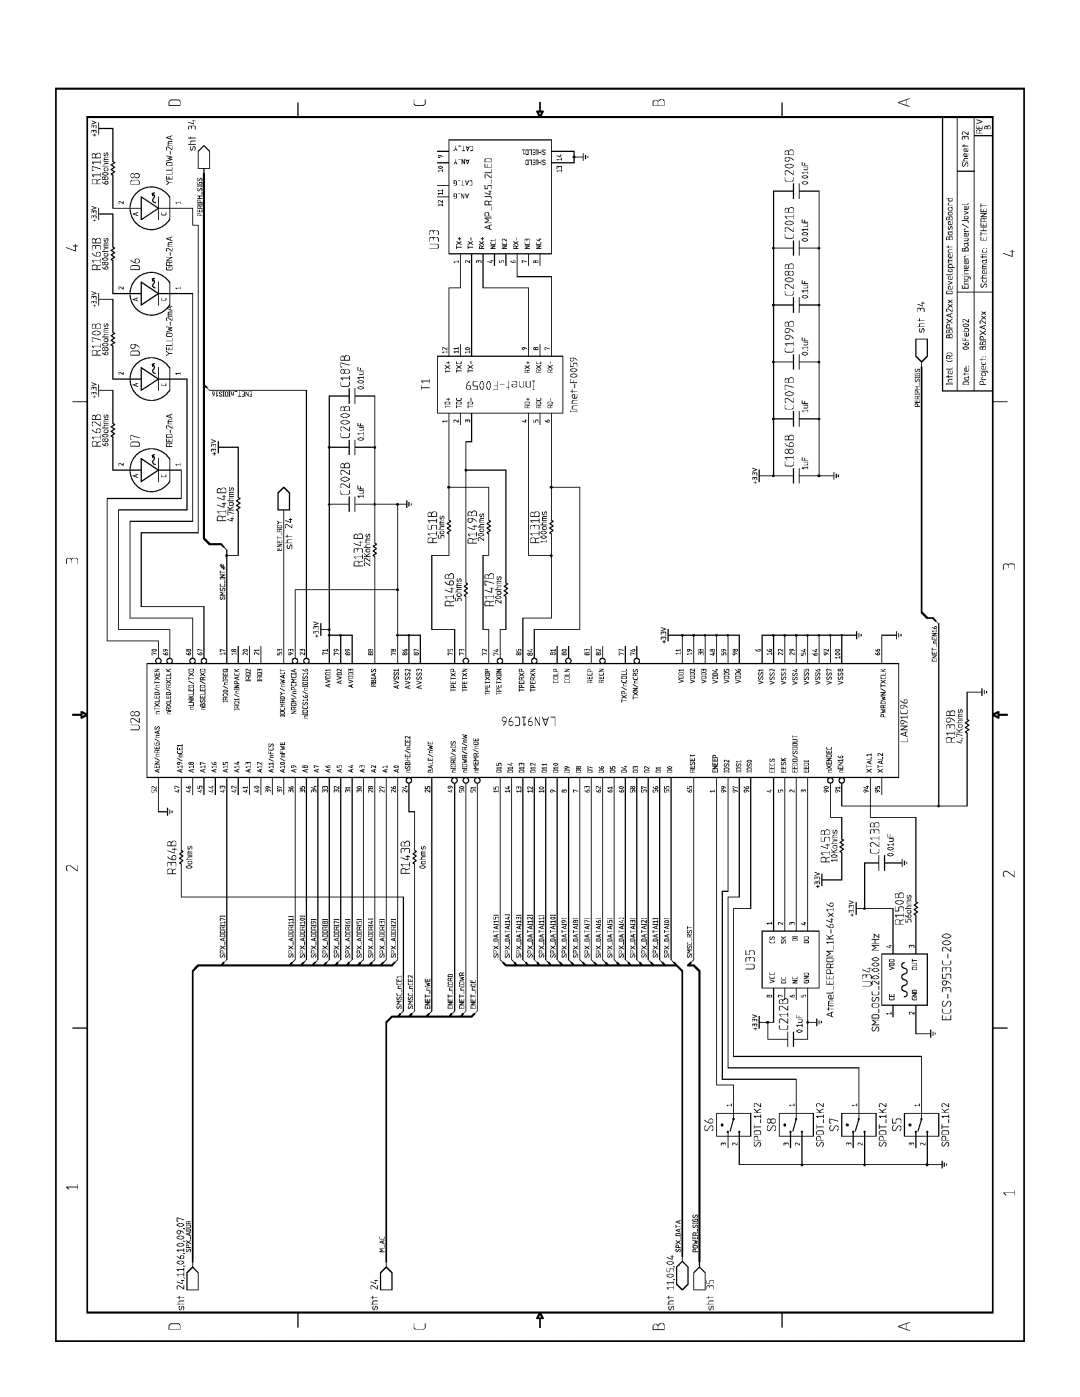 Intel PXA250 and PXA210 manual 